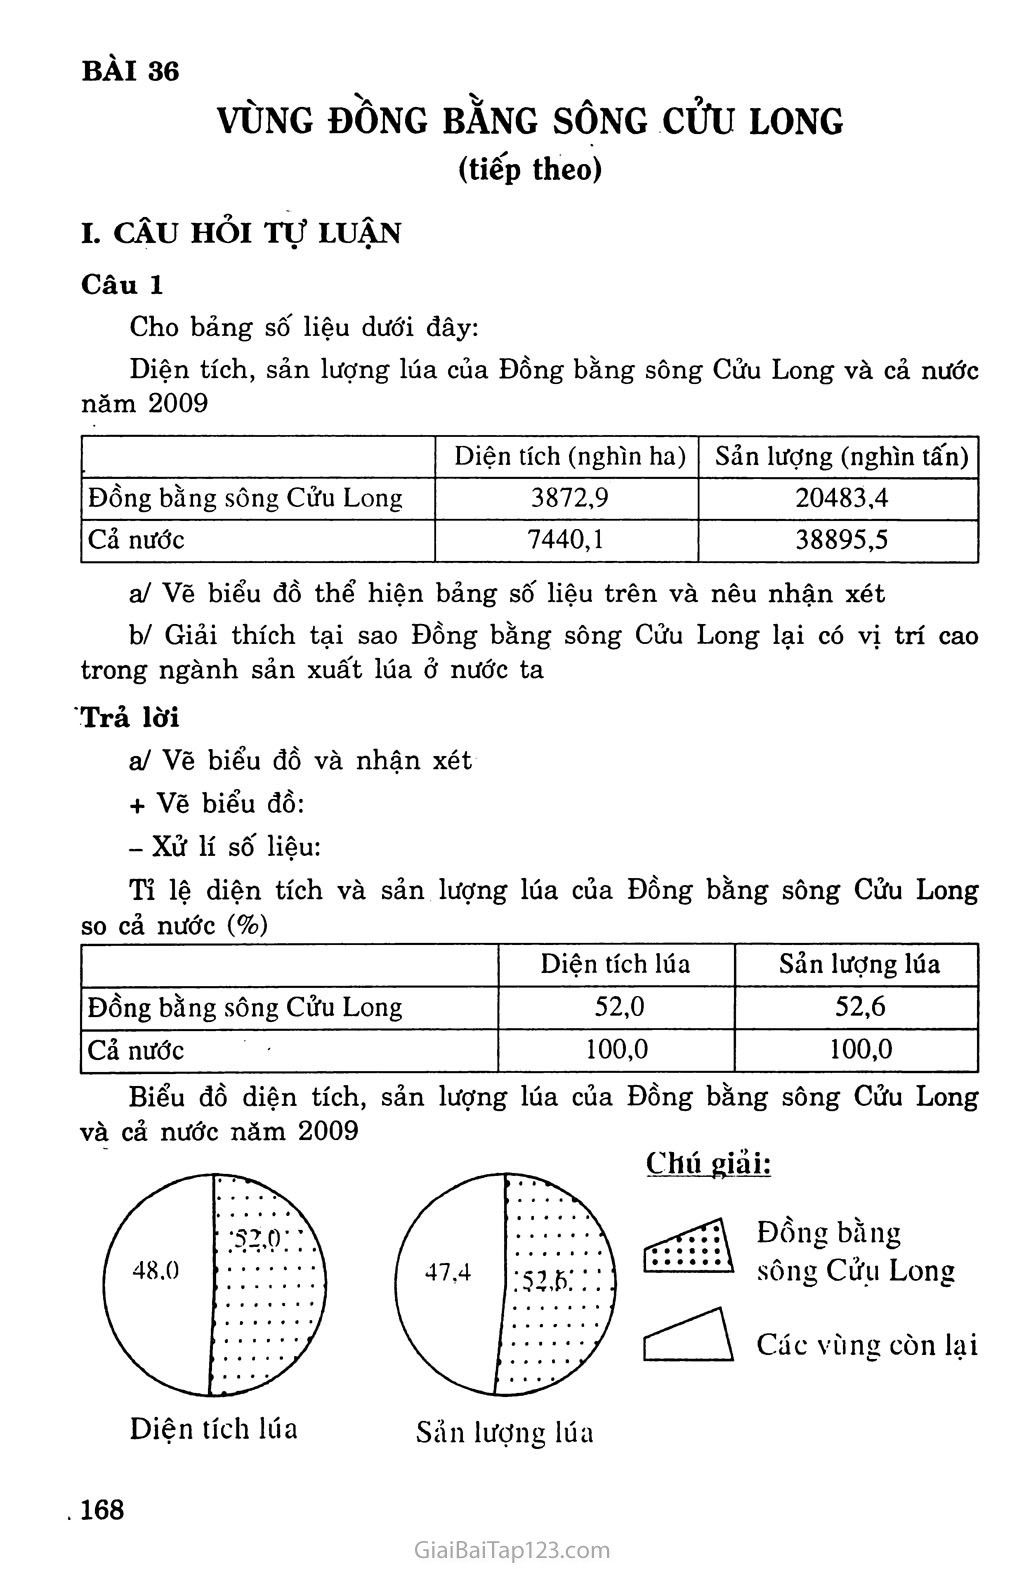 Bài 36. Vùng Đồng bằng sông Cửu Long (tiếp theo) trang 1